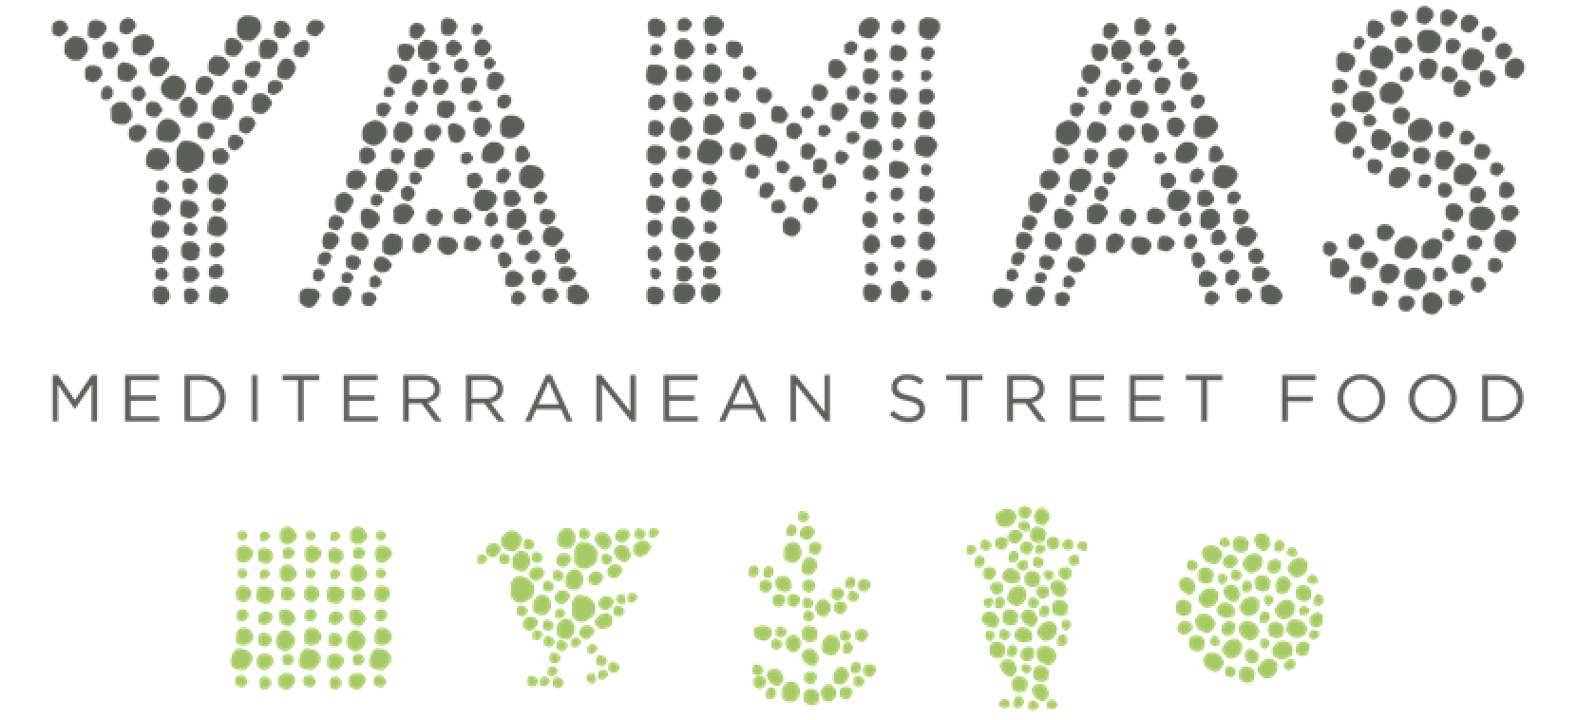 Yamas Mediterranean Street Food 624 W 4th St.